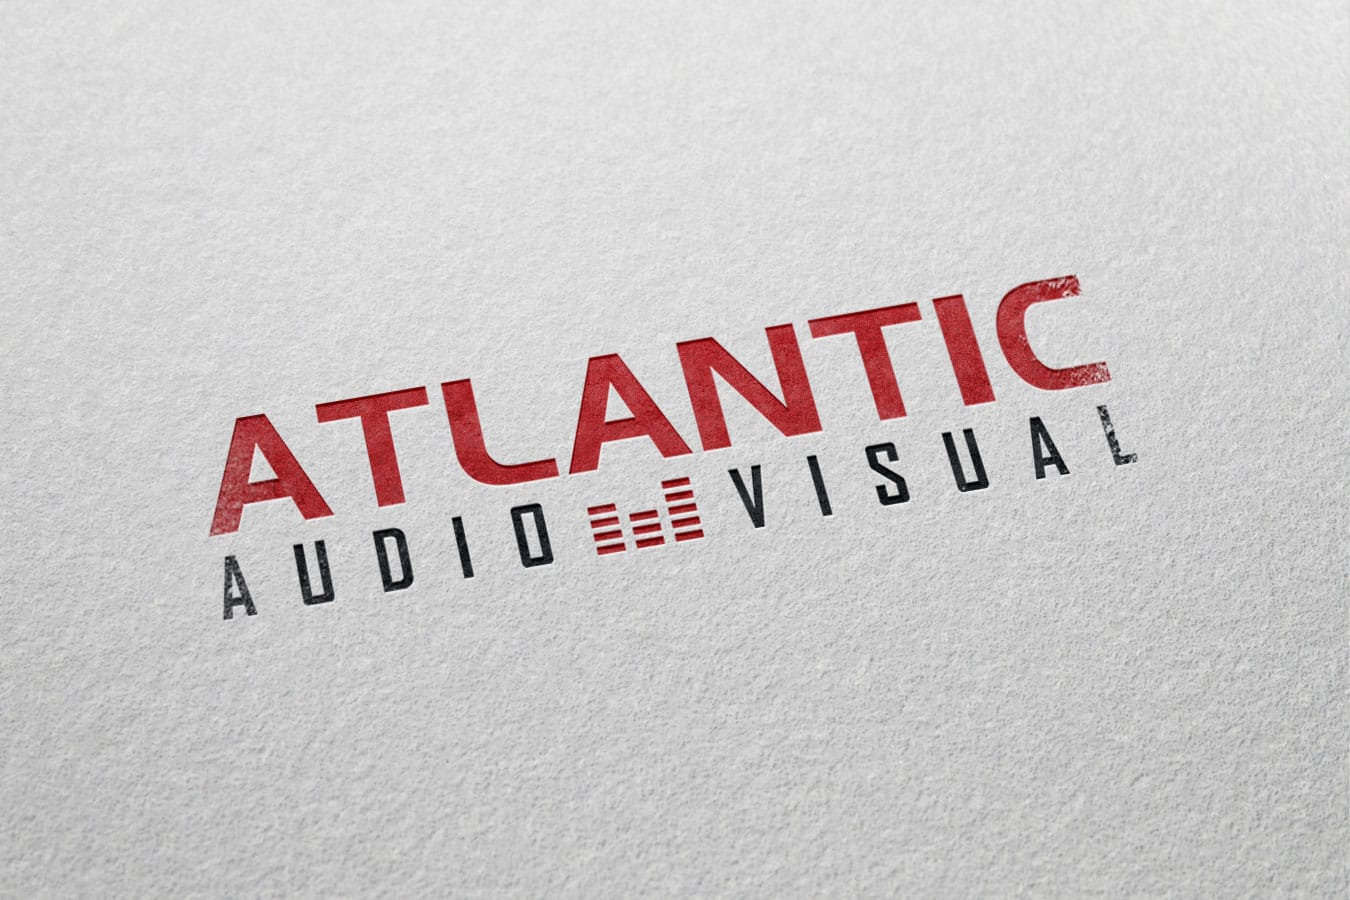 logos_atlanticav